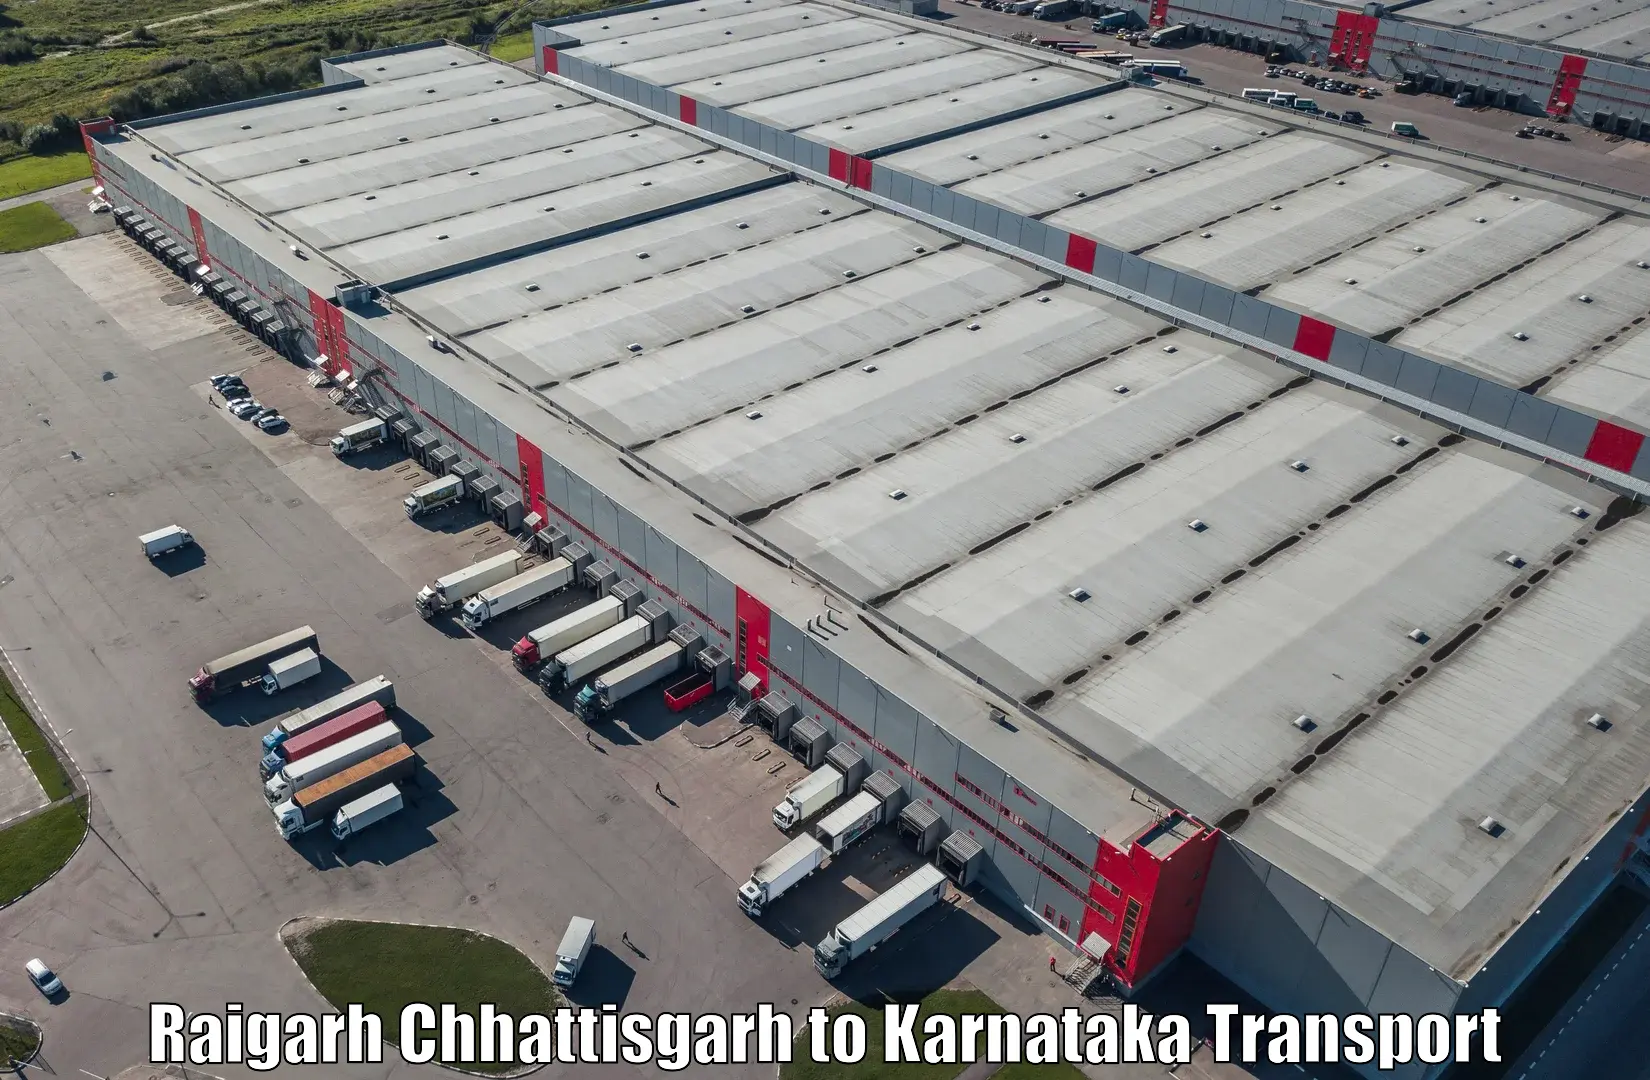 Truck transport companies in India Raigarh Chhattisgarh to Hungund